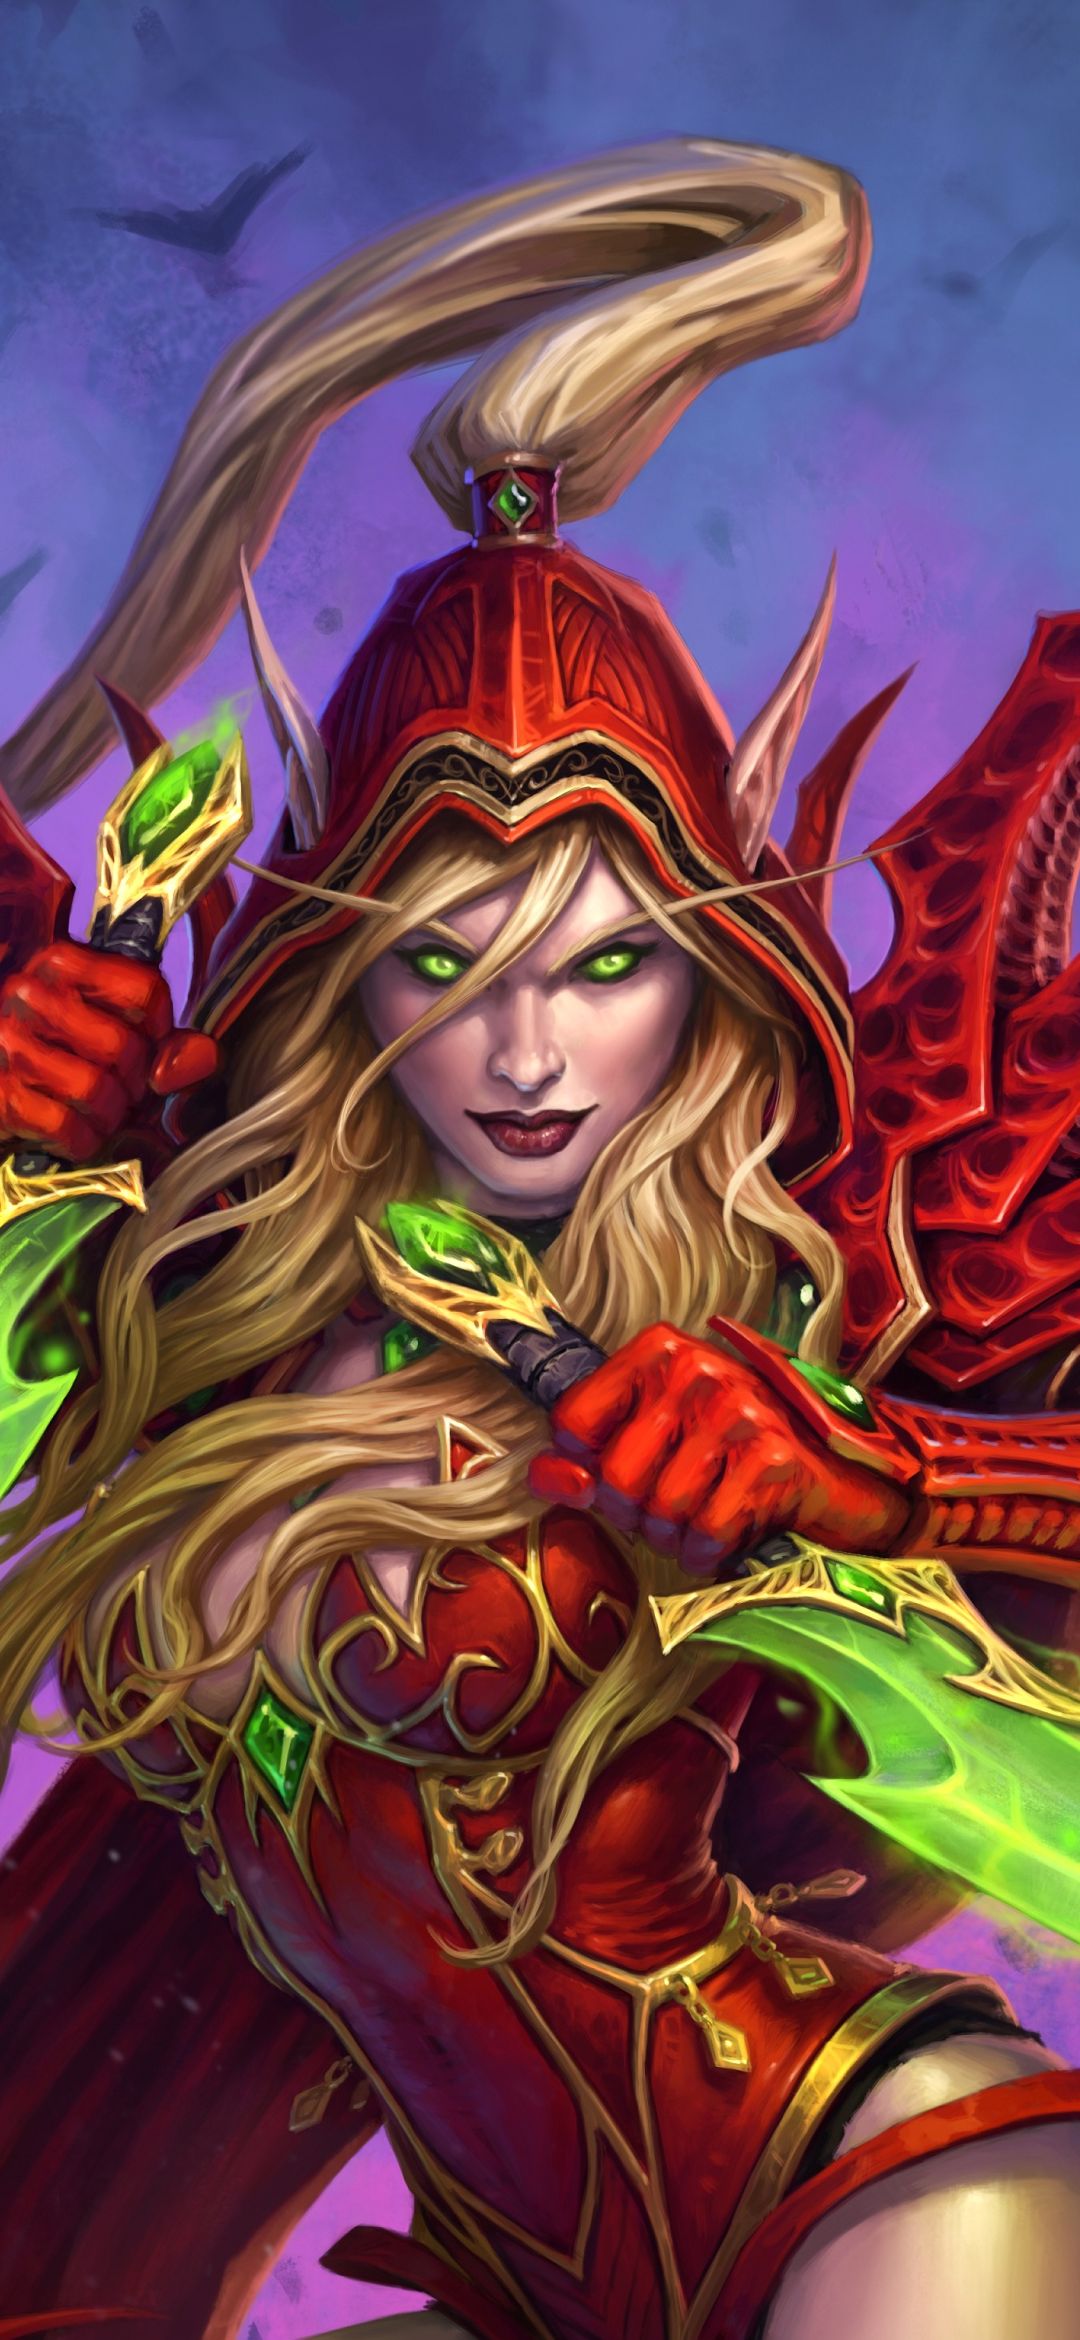 Descarga gratuita de fondo de pantalla para móvil de Warcraft, Rubio, Duende, Ojos Verdes, Videojuego, Orejas Puntiagudas, Mujer Guerrera, Rubia, Elfo, Hearthstone: Heroes Of Warcraft.